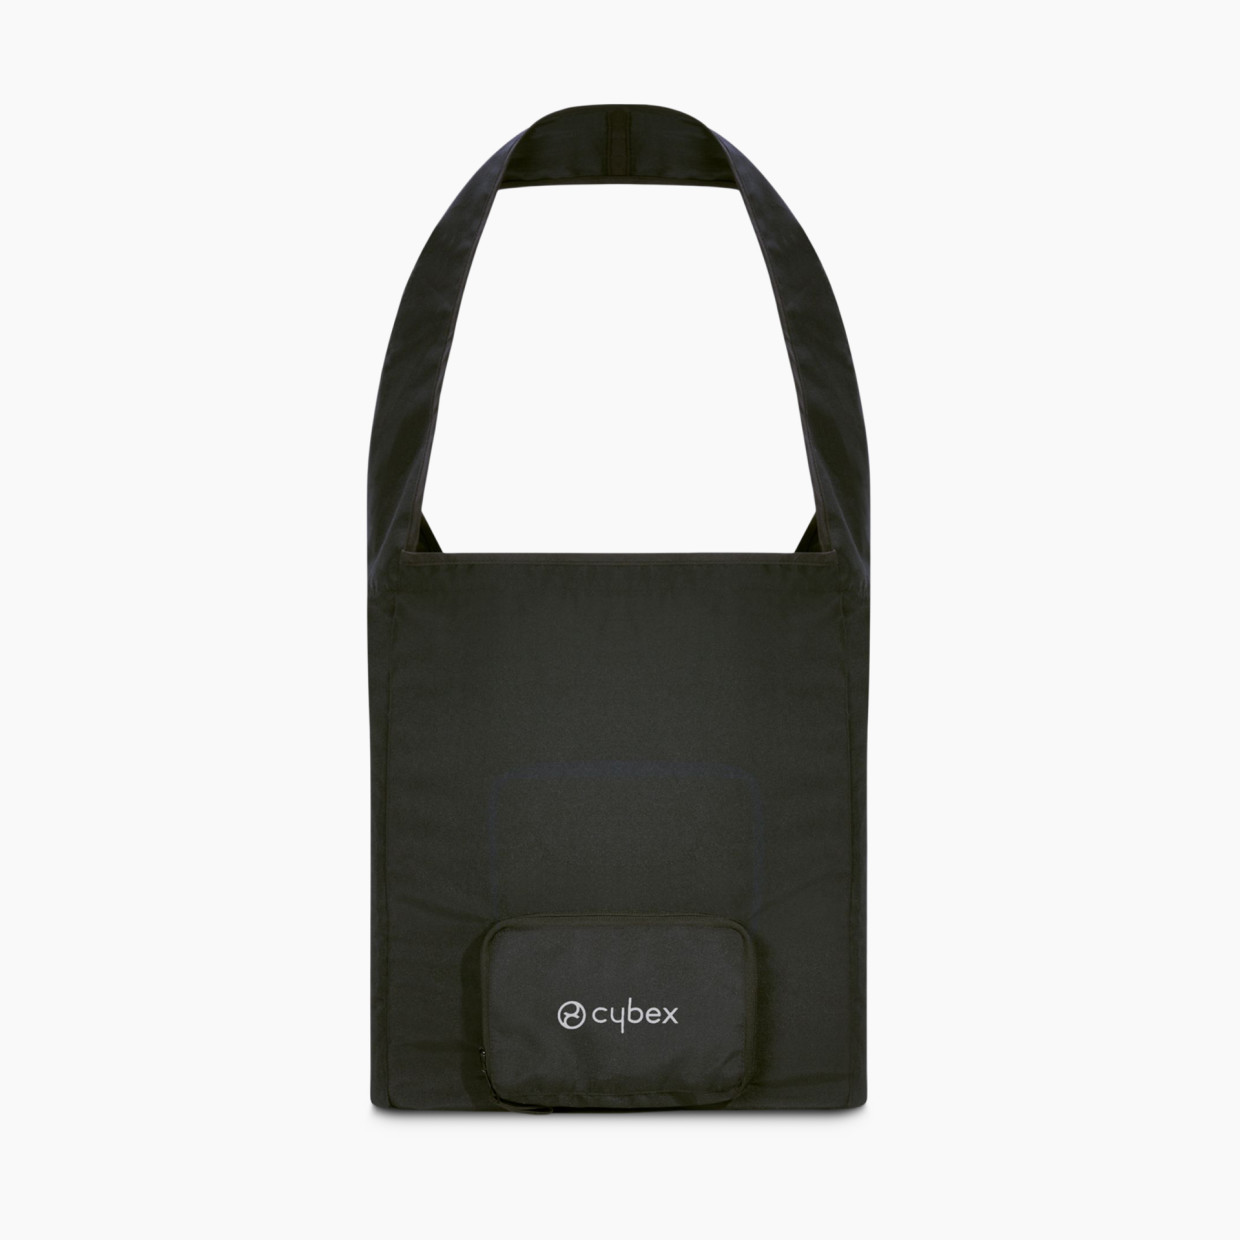 Cybex Libelle Stroller Travel Bag - Black.